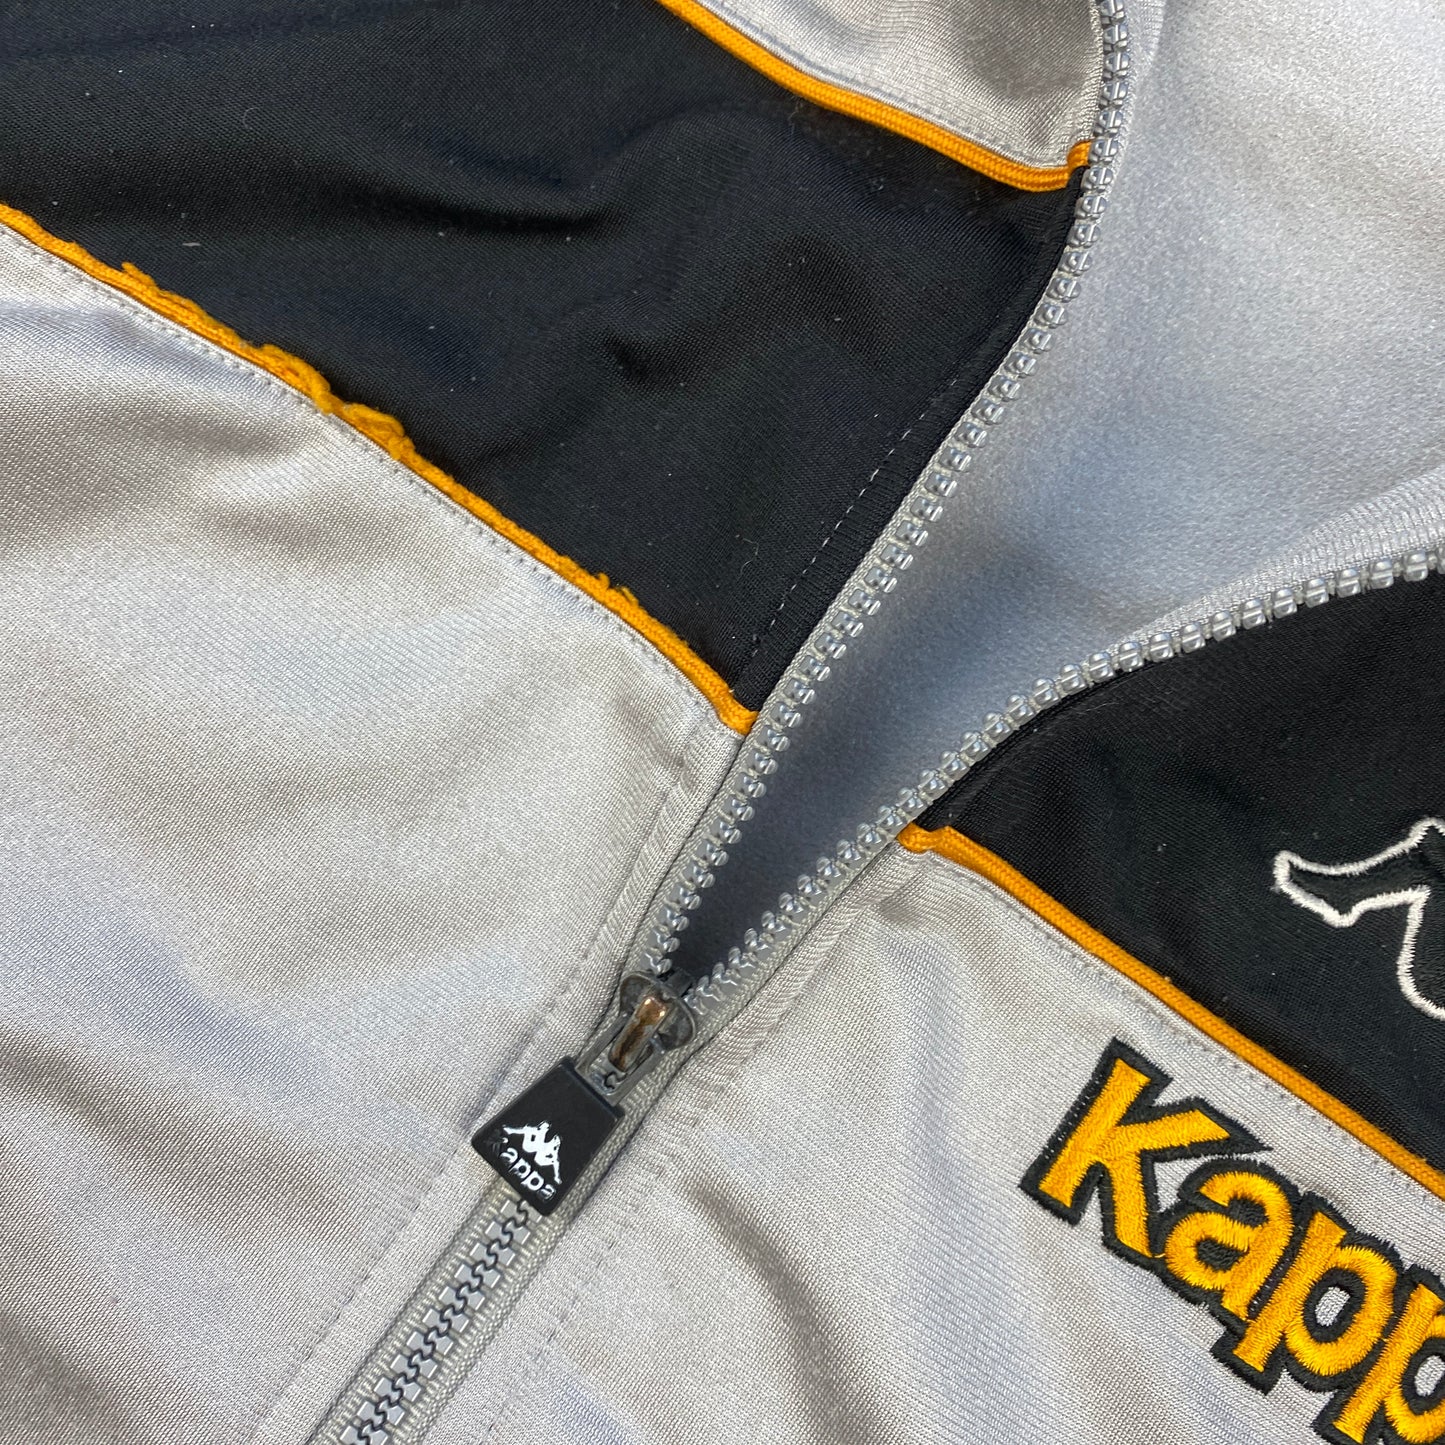 Kappa track jacket (XL)